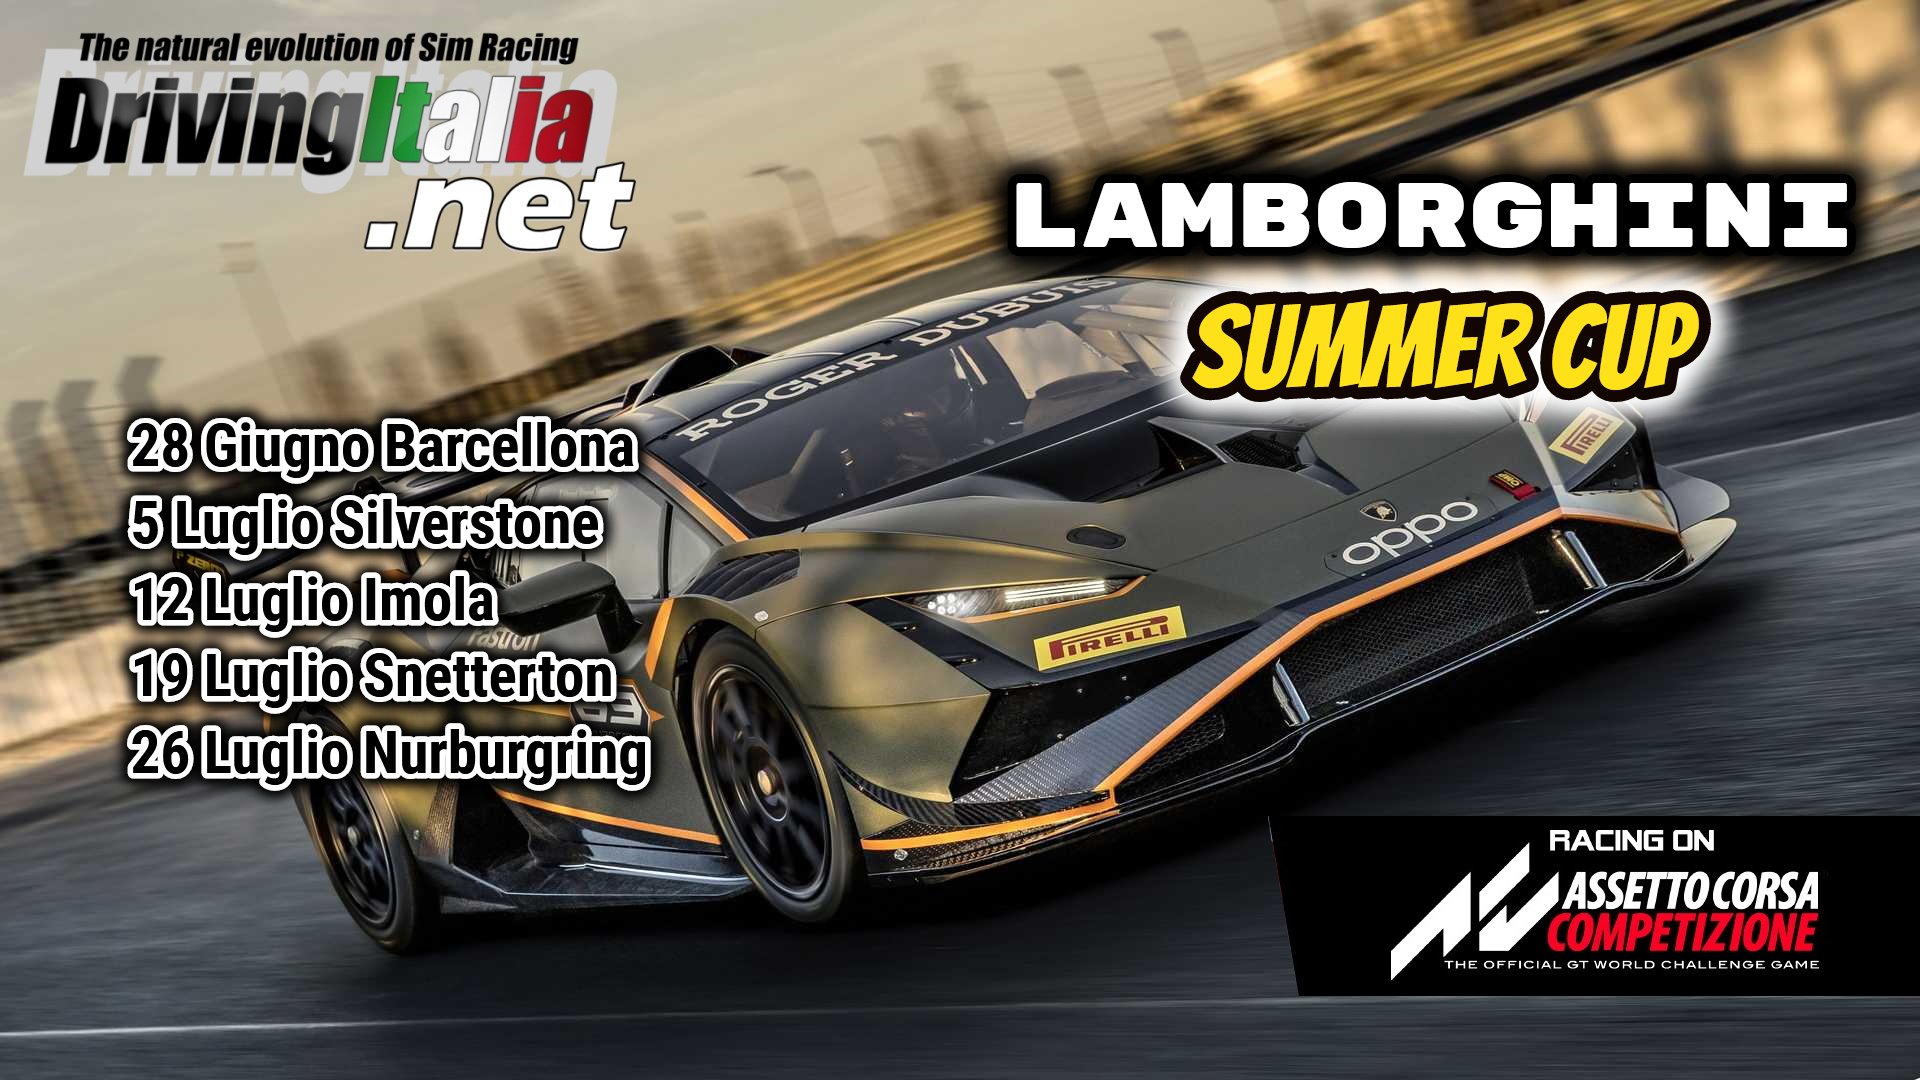 More information about "Assetto Corsa Competizione: LIVE dalle 21,30 la Lamborghini Summer Cup dal Nurburgring !"